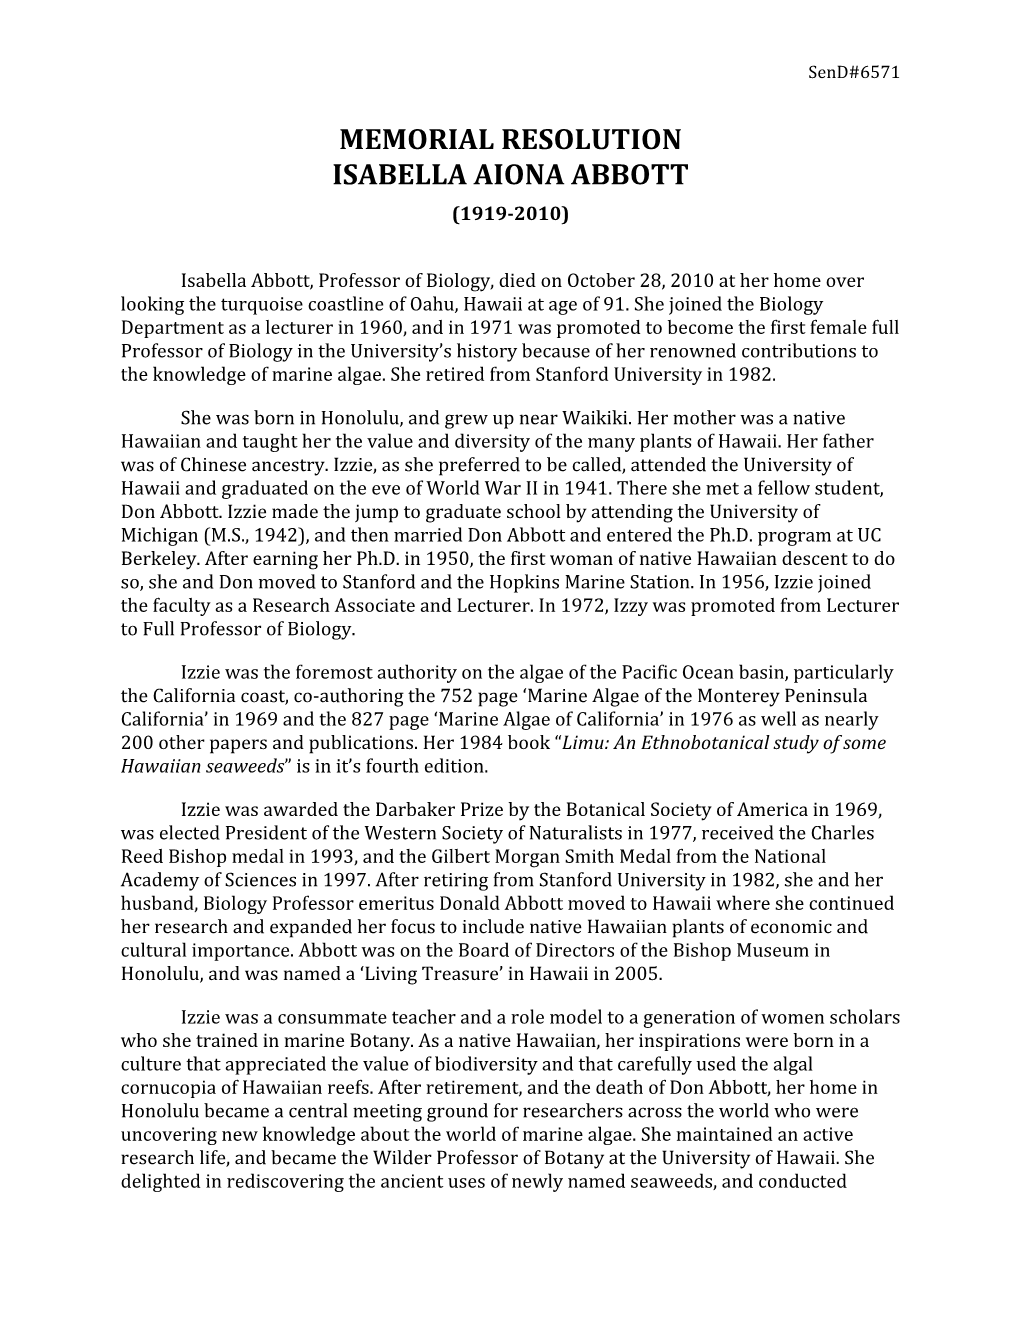 Memorial Resolution Isabella Aiona Abbott (1919-2010)